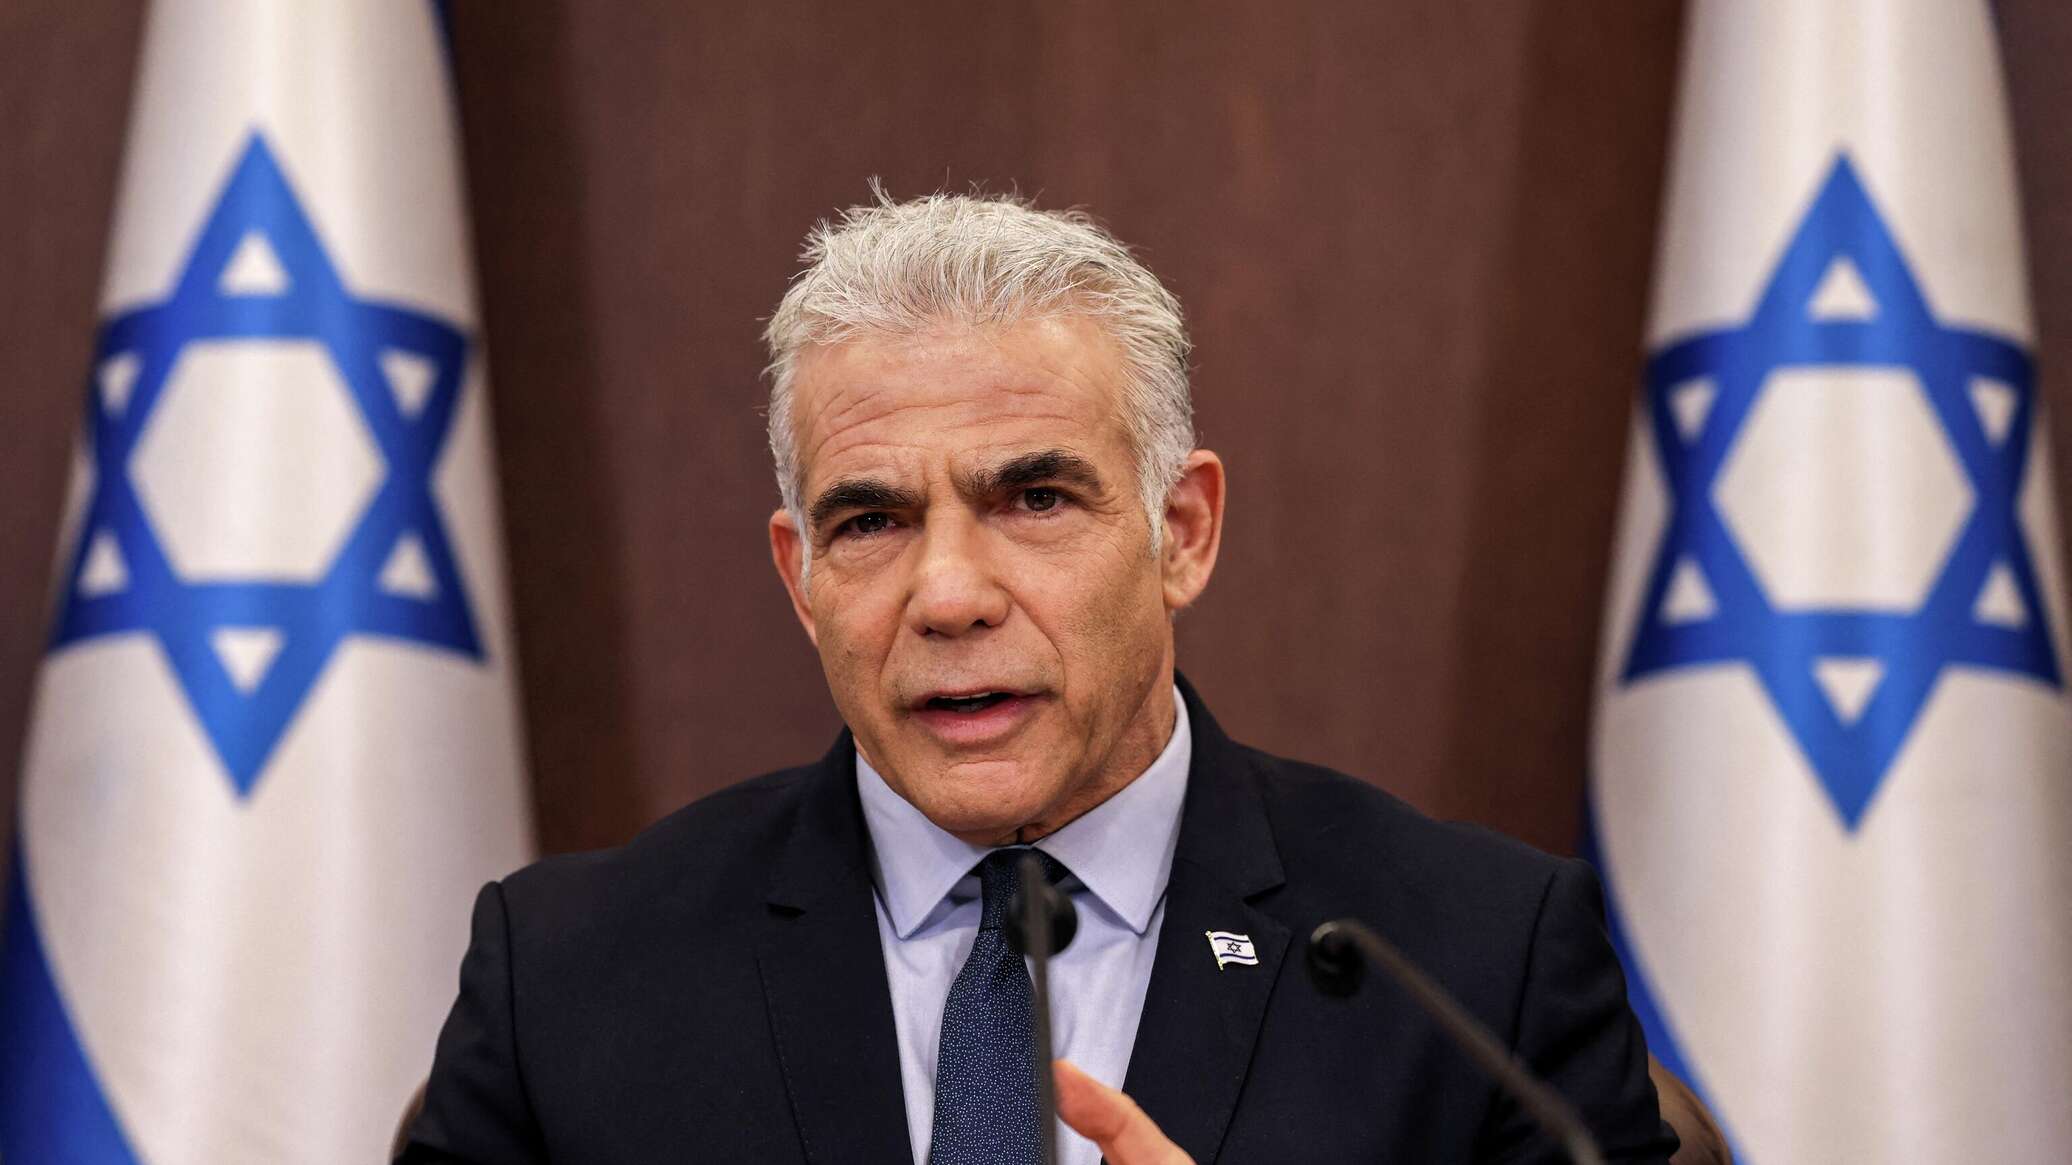 لابيد: نتنياهو غير كفء وليس جديرا بتولي رئاسة الوزراء في إسرائيل